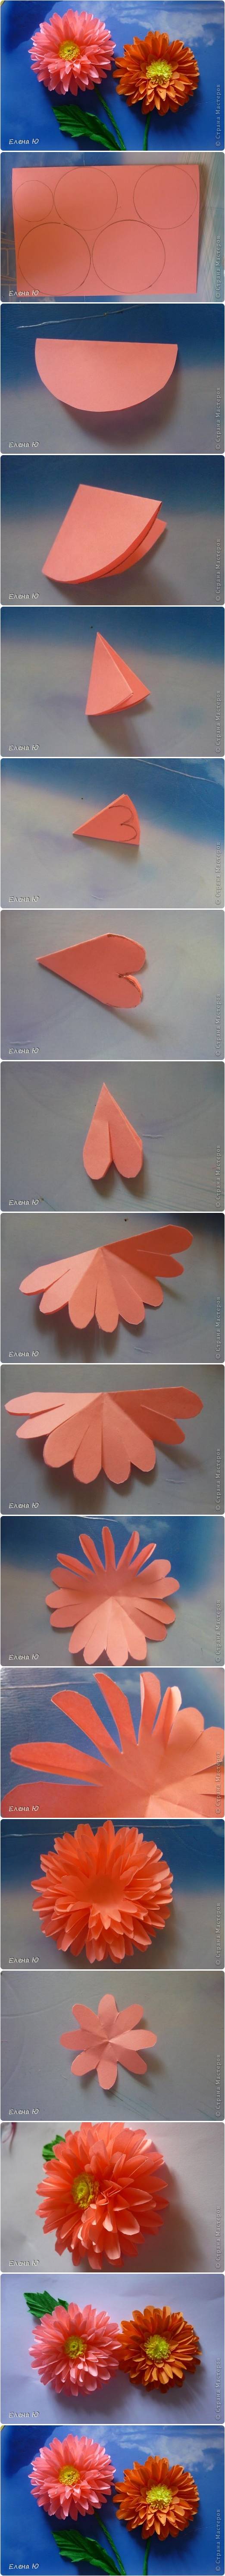 How to Make Paper Dahlias